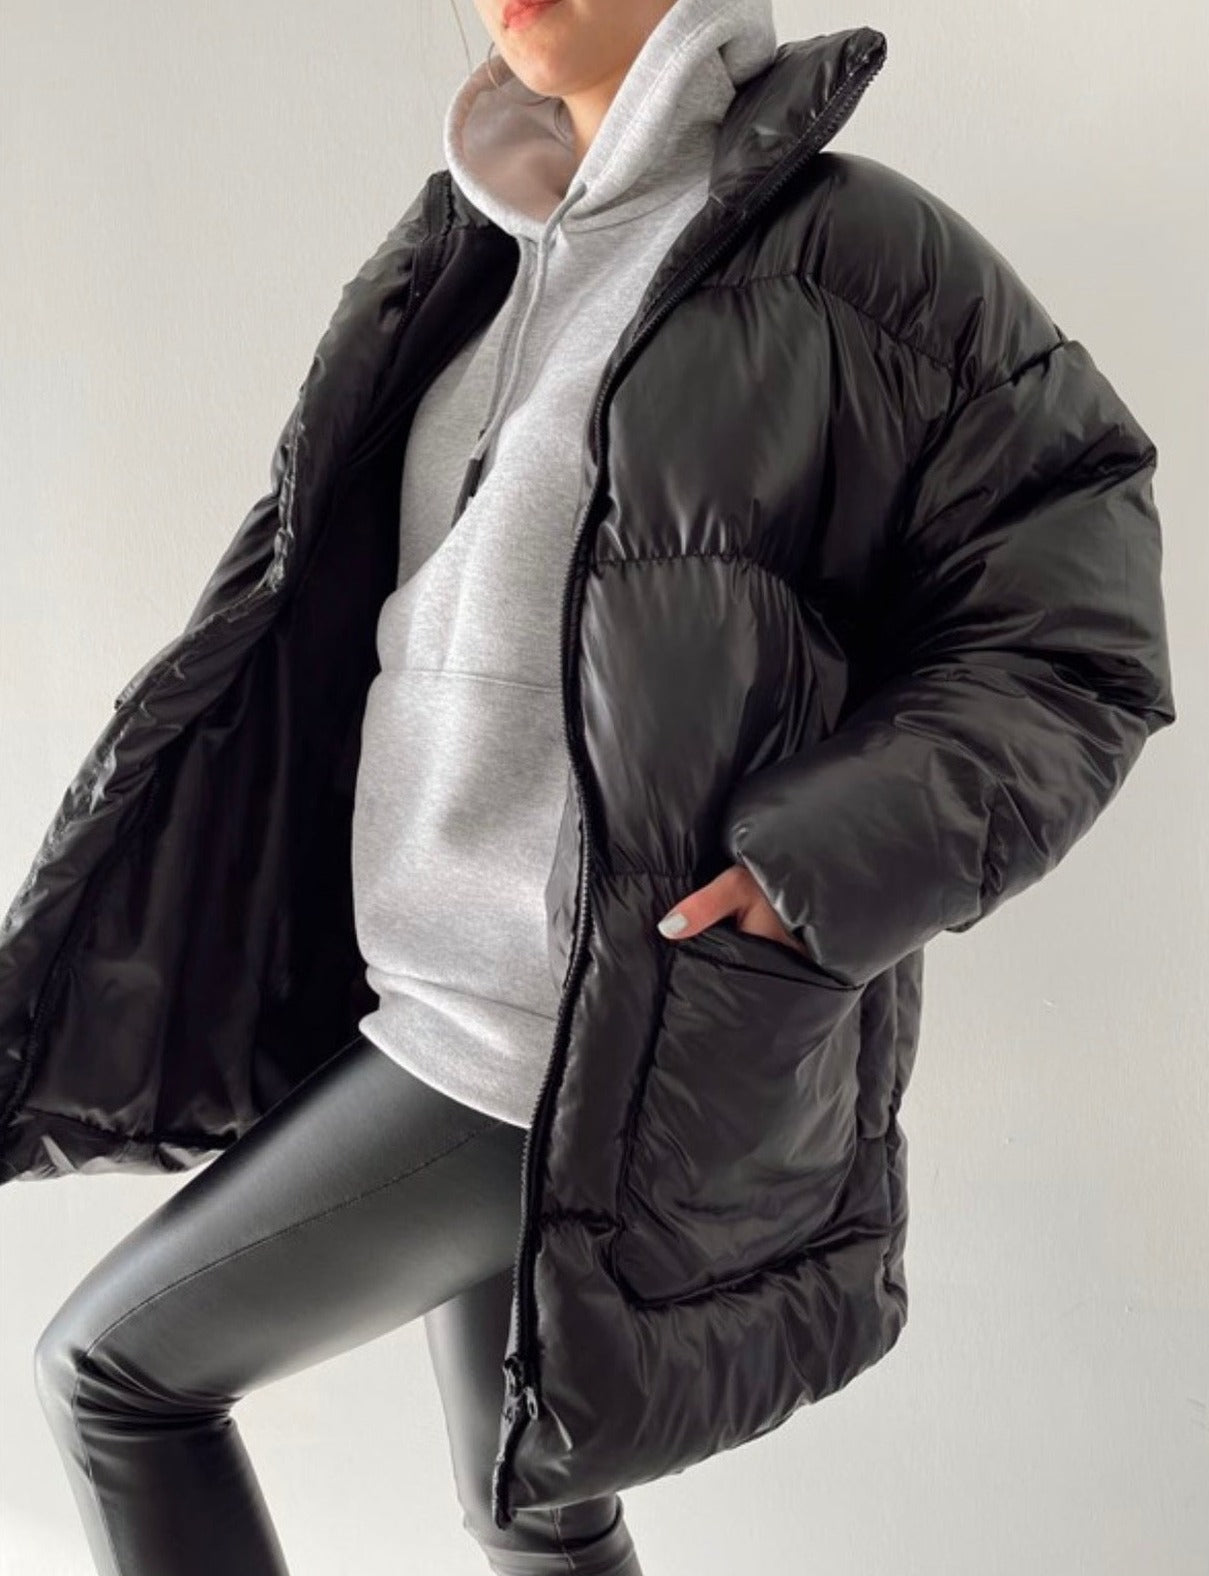 Дамско яке TRISA  https://bvseductive.com/products/women-s-jackets-trisa-1  100 % полиестер модерно дамско яке в черен цвят със свободна кройка, подходяща за всеки модел с два големи, странични джоба затваряне с копчета по цялата дължина чудесен избор за зимния период идеален избор за тренди визия